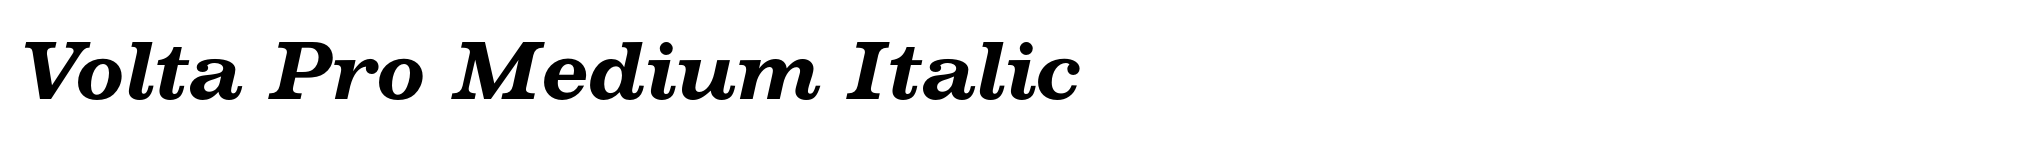 Volta Pro Medium Italic image